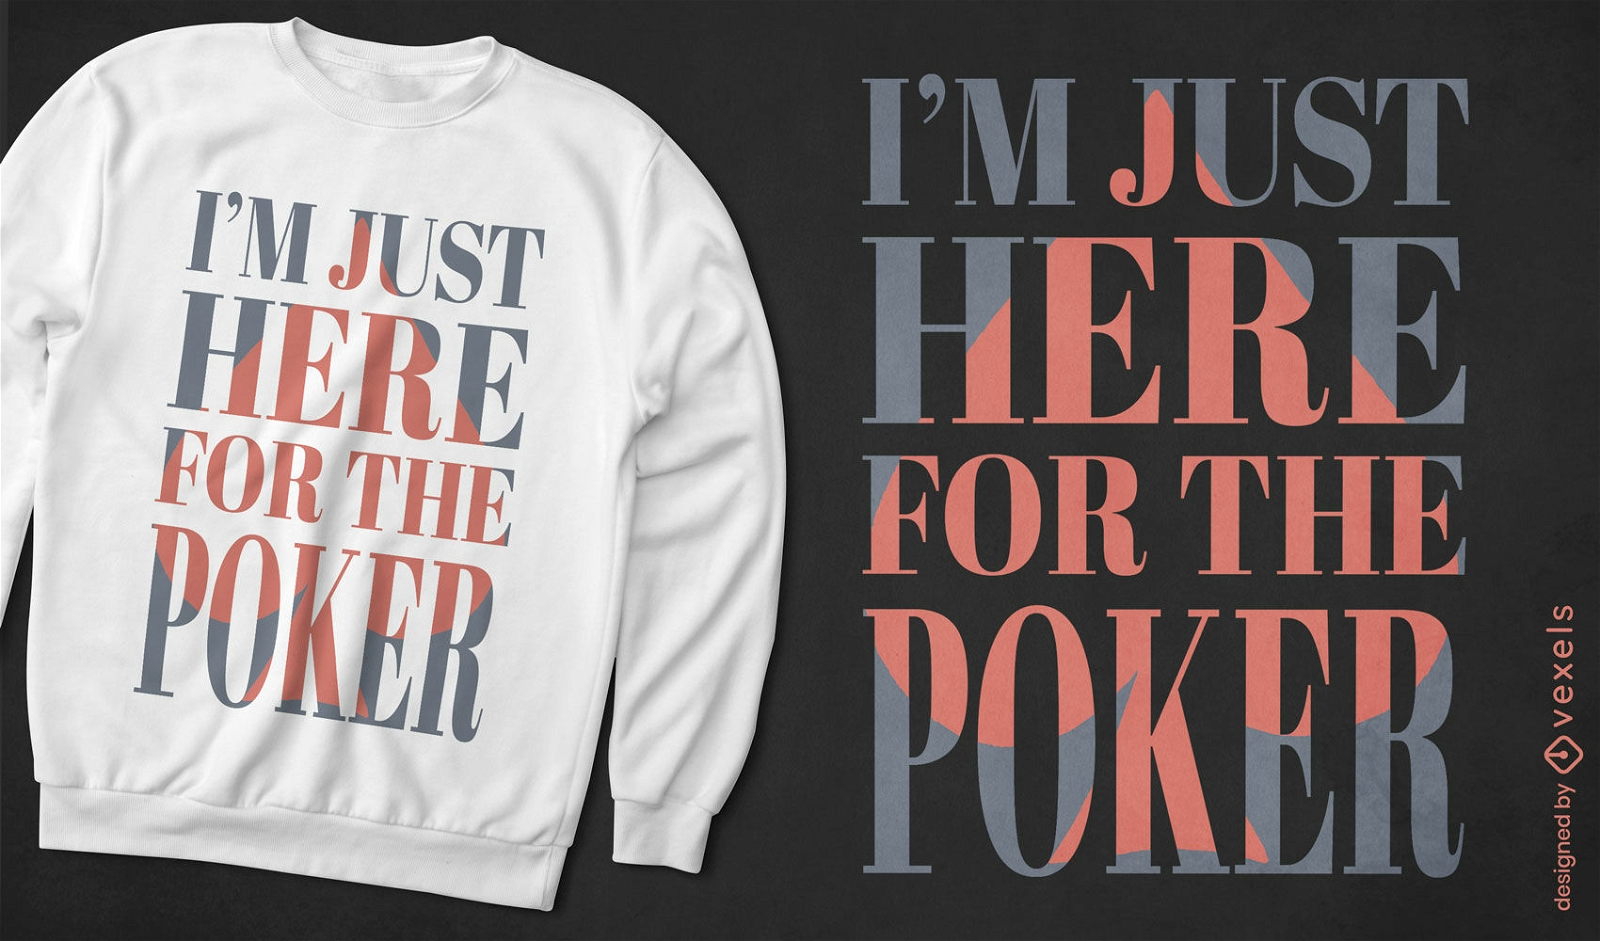 Aquí para el diseño de la camiseta Poker Ace